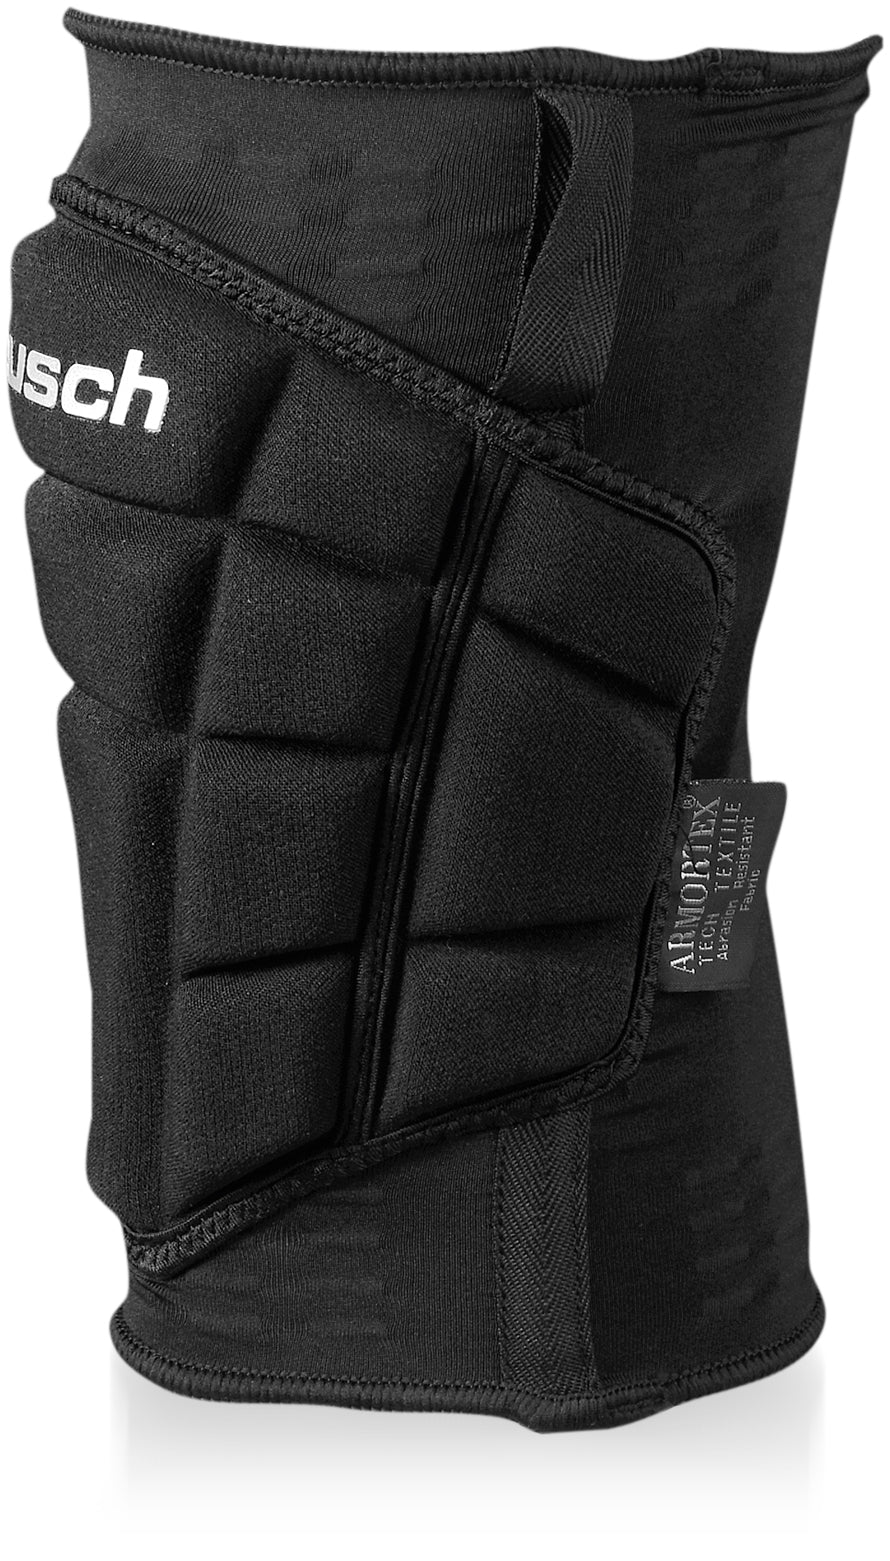 36 77 500 - Reusch Ultimate Knee Guard – ReuschSoccer